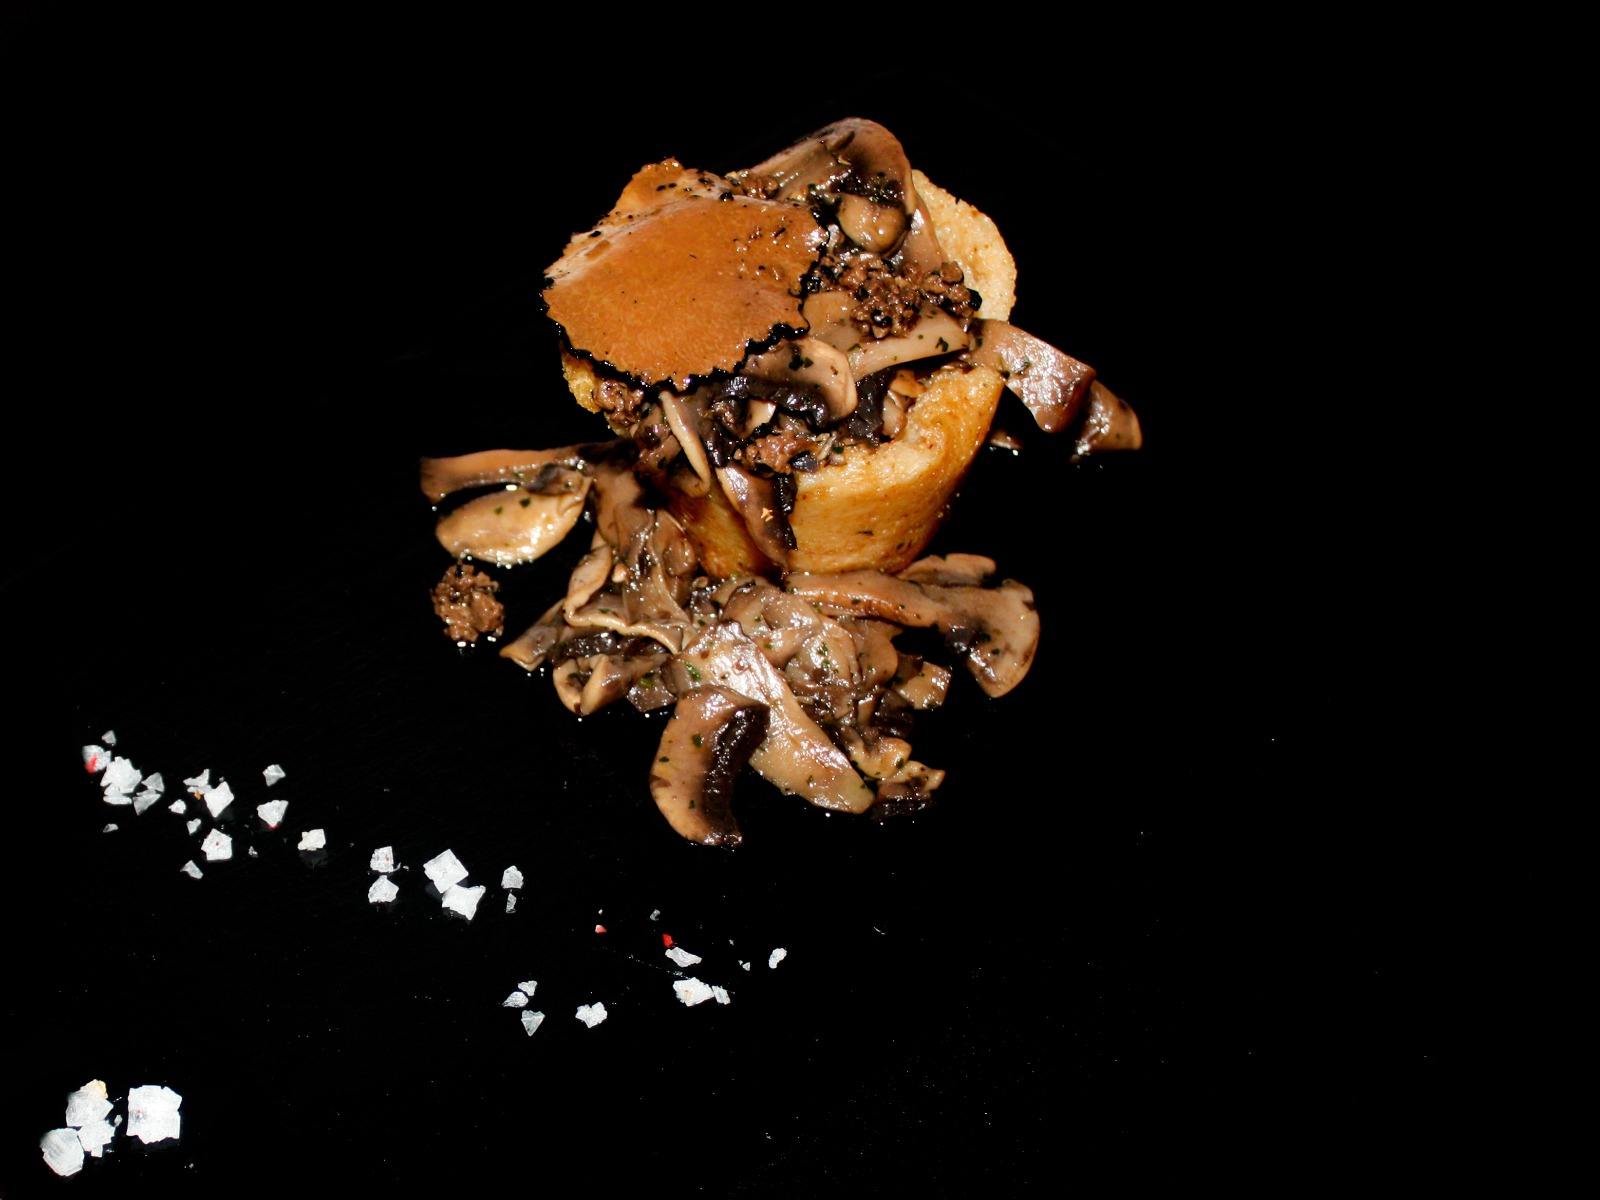 Tortino di patate con funghi champignon e tartufo nero estivo